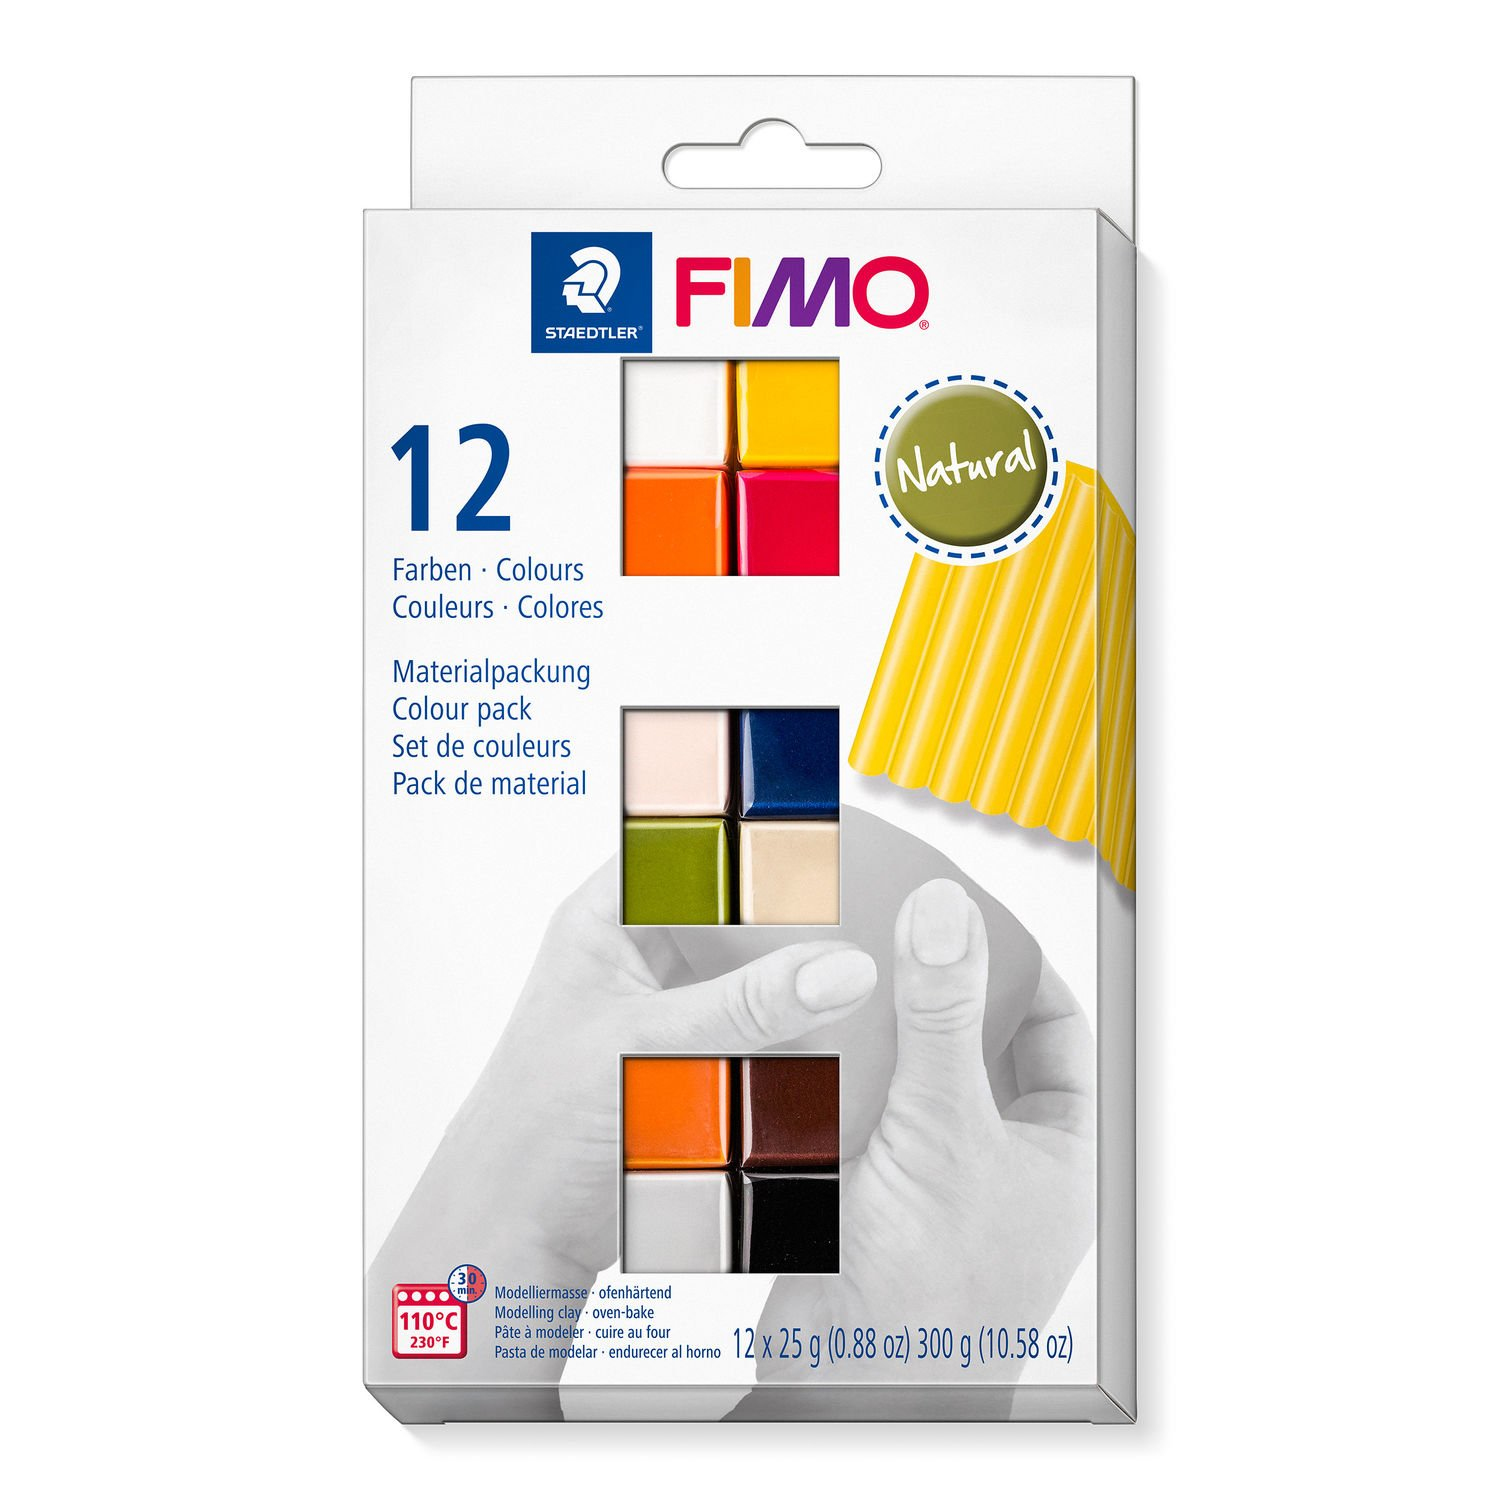 STAEDTLER FIMO 8023 C - Modellierton - Schwarz - Blau - Schokolade - Farbe Cognac - Grau - Olive - Orange - Pink - Rot - Weiß - Gelb - 12 Stück(e) - 12 Farben - 110 °C - 30 min